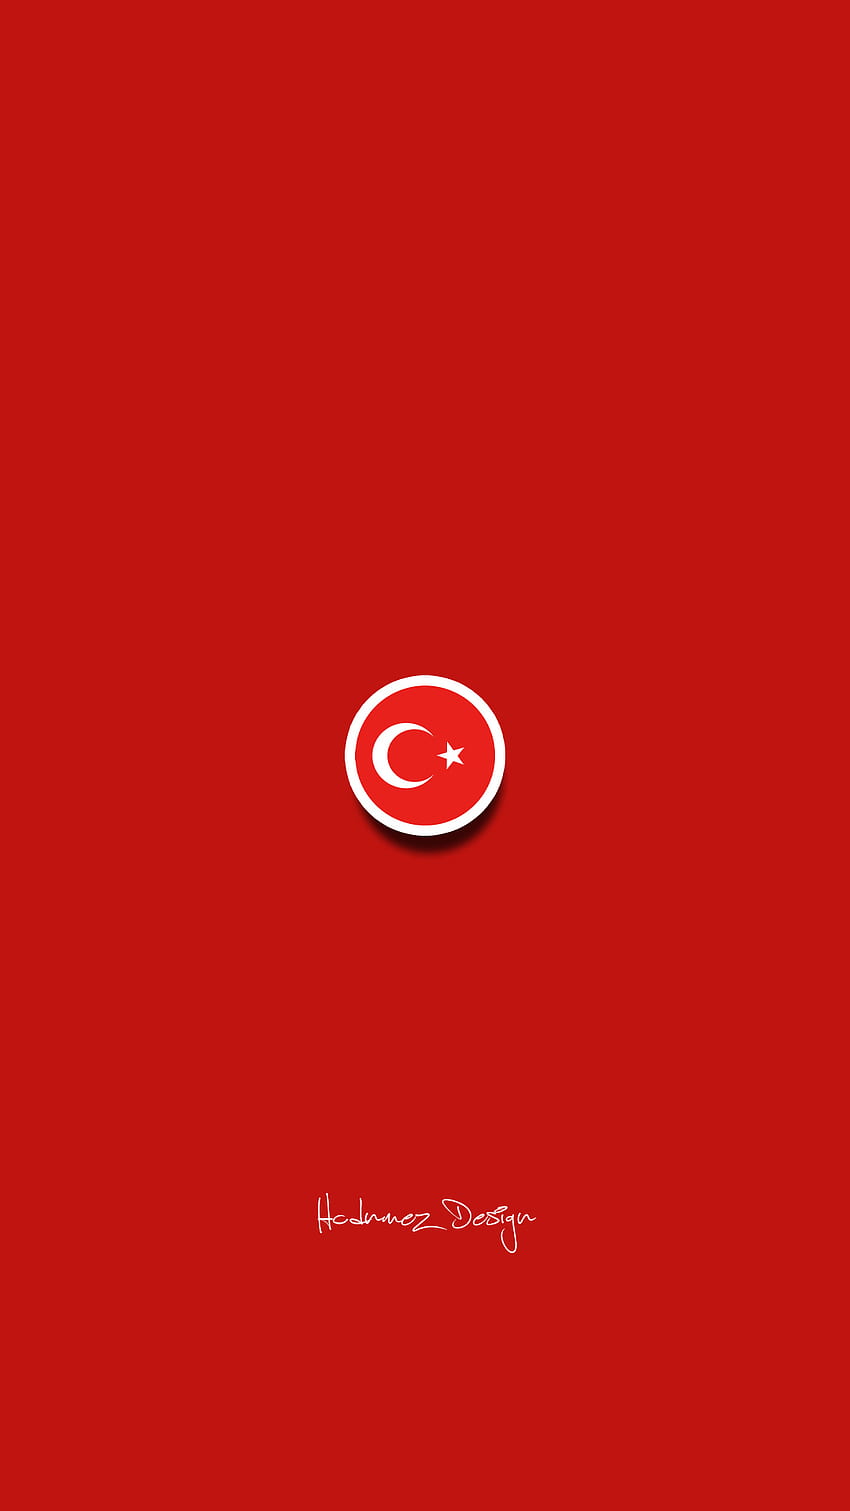 TÜRK BAYRAĞI, FLAGA TURCJI, HCDNMEZ DESIGN, TÜRKİYE, TURKISH, BAYRAK, bozkurt Tapeta na telefon HD